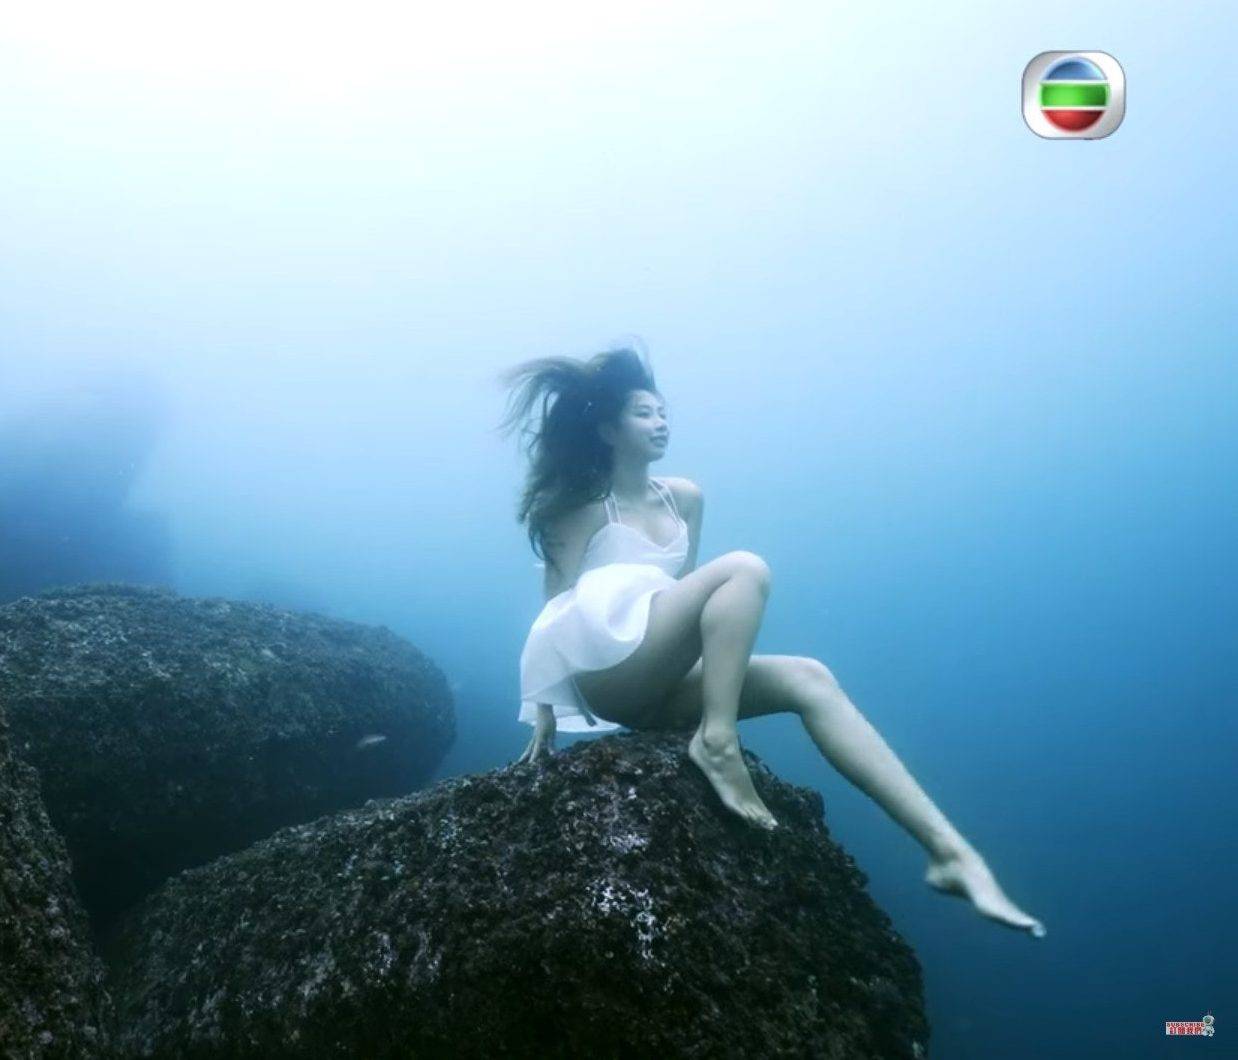  去年為無綫Amazing Summer拍攝徒手潛水片段，展現美態同時大曬潛水絕技。